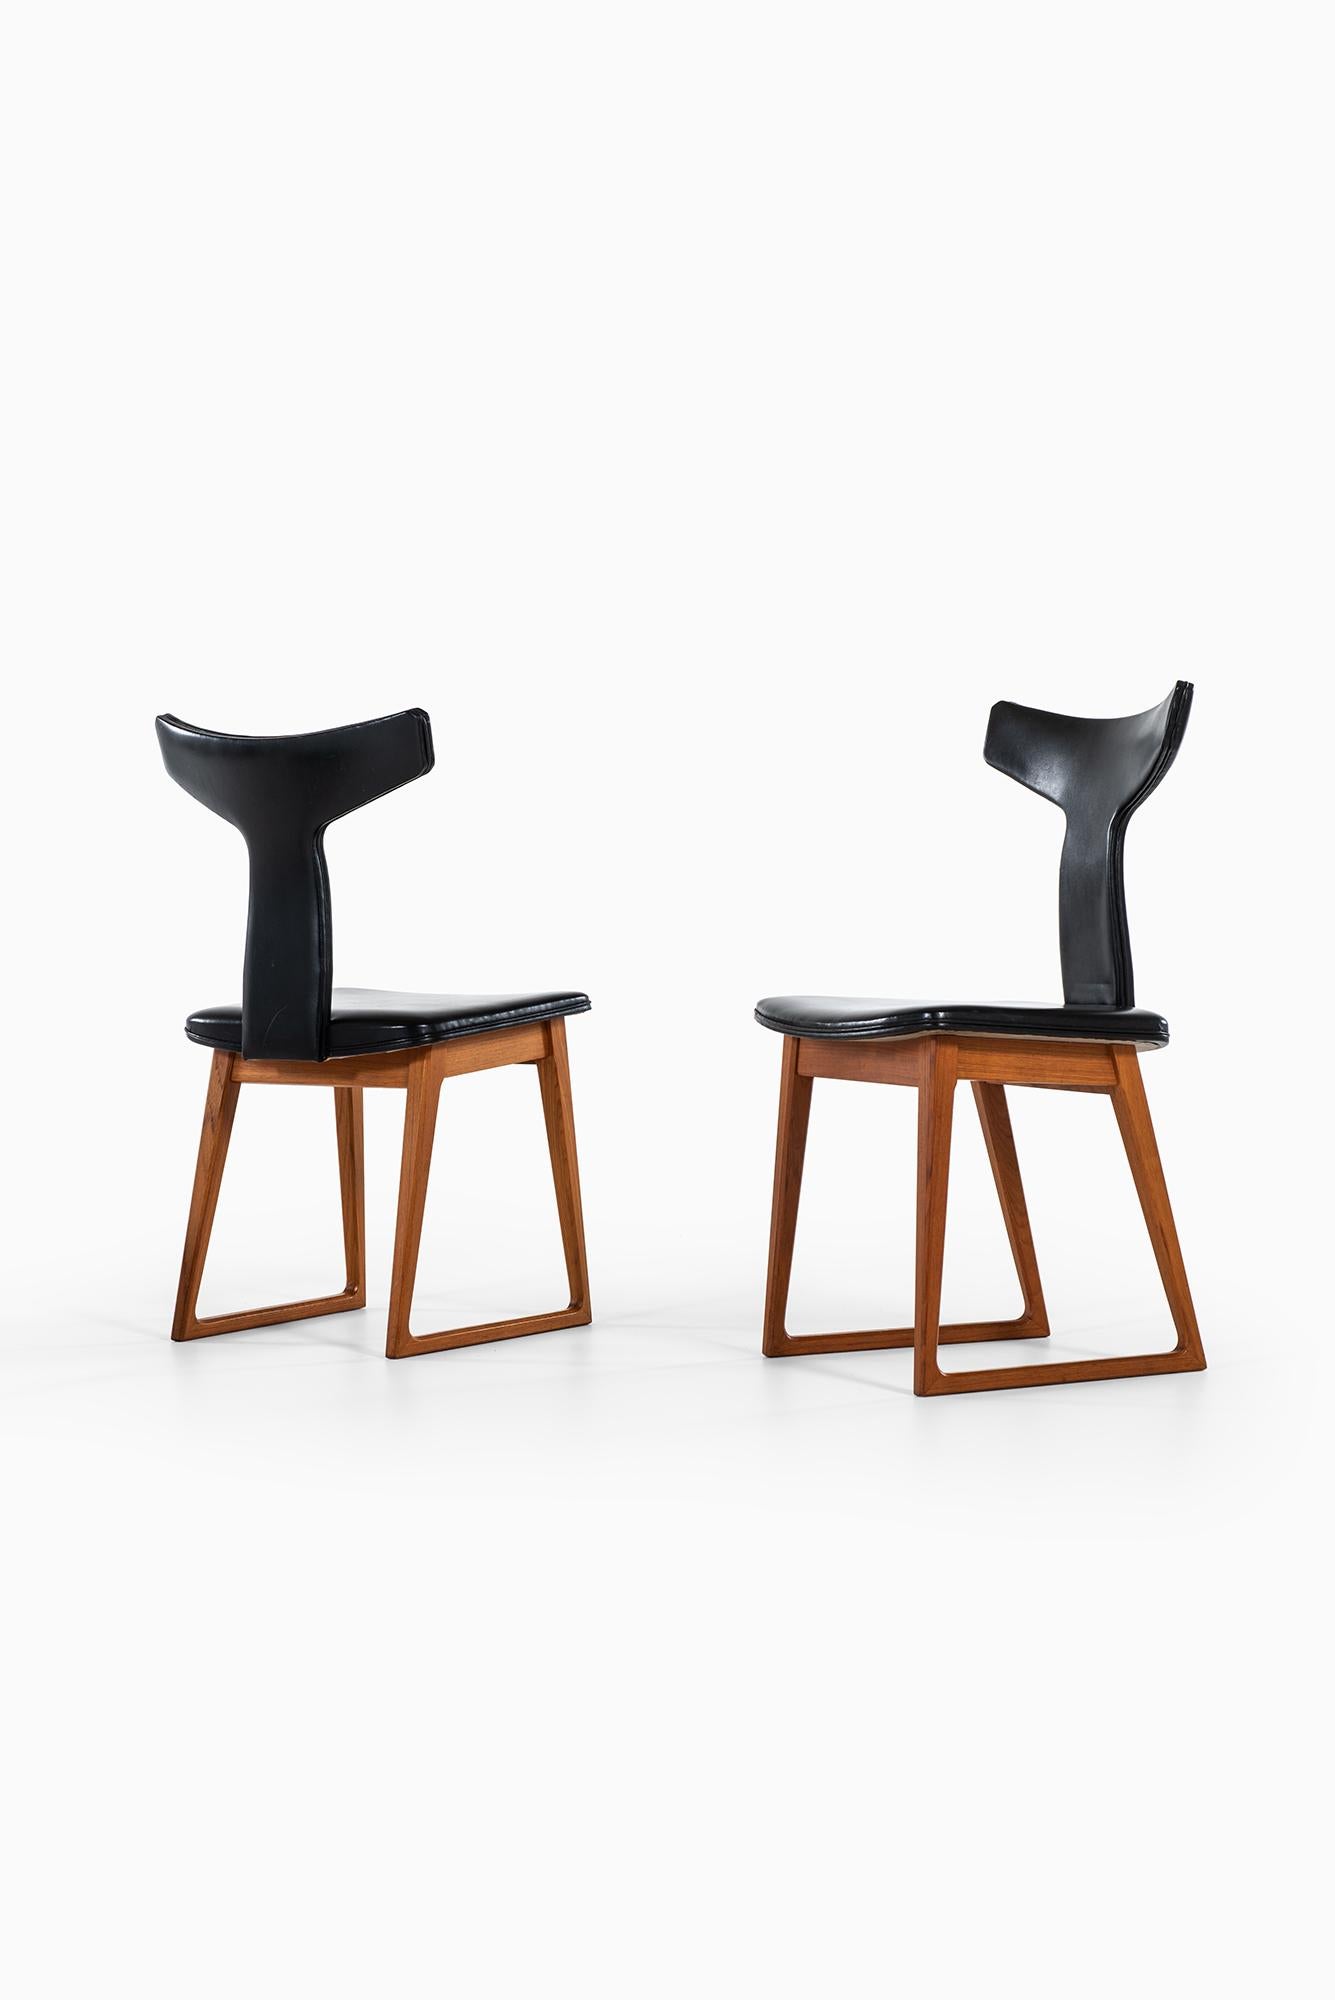 Ensemble très rare de quatre chaises de salle à manger conçues par Helge Sibast. Produit par Sibast au Danemark.